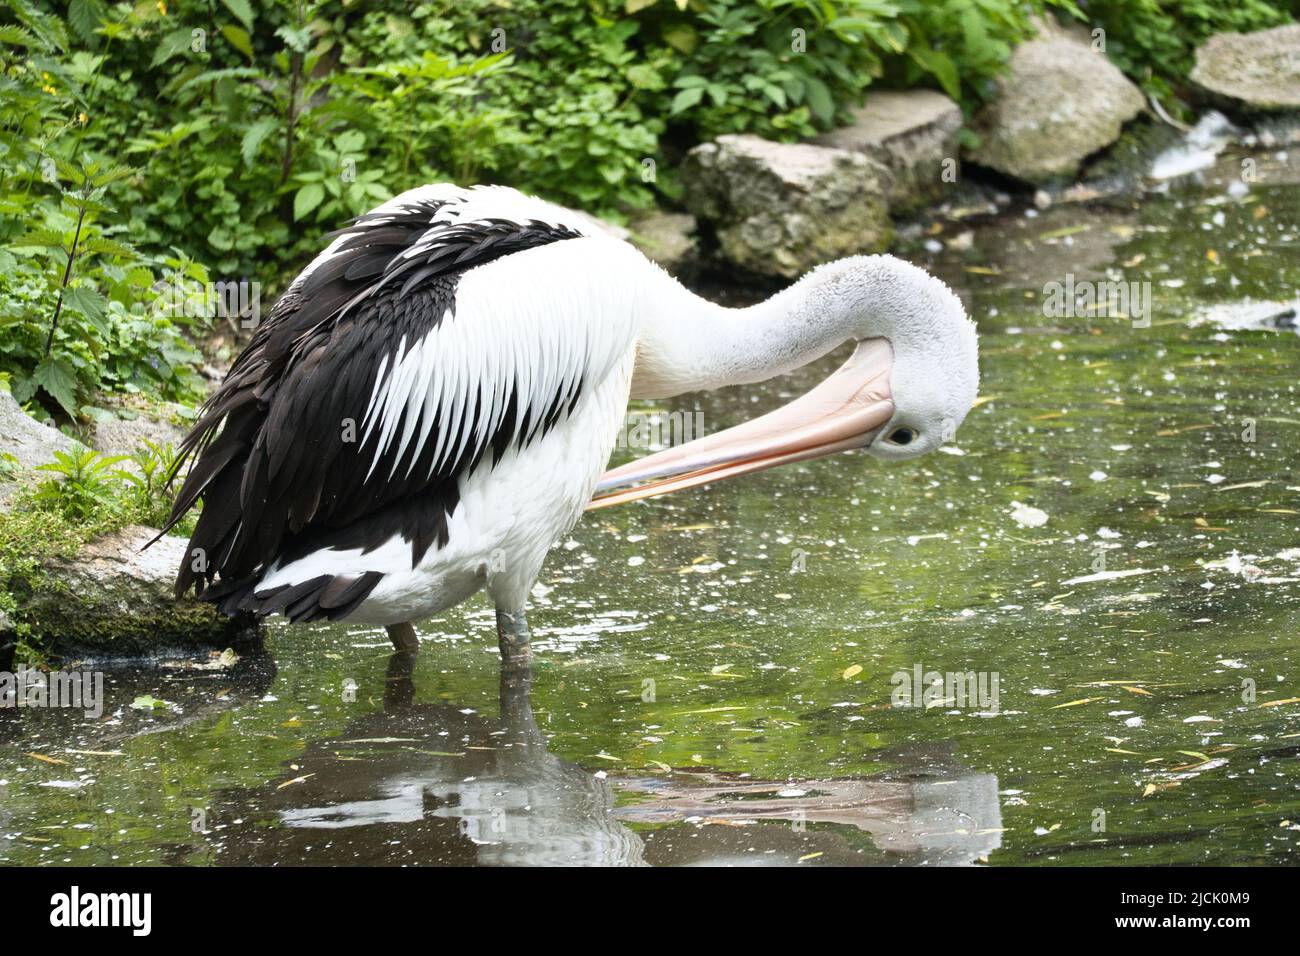 Pelican sull'acqua. Piumaggio grigio bianco, becco grande, ad un grosso uccello marino. Foto animale Foto Stock